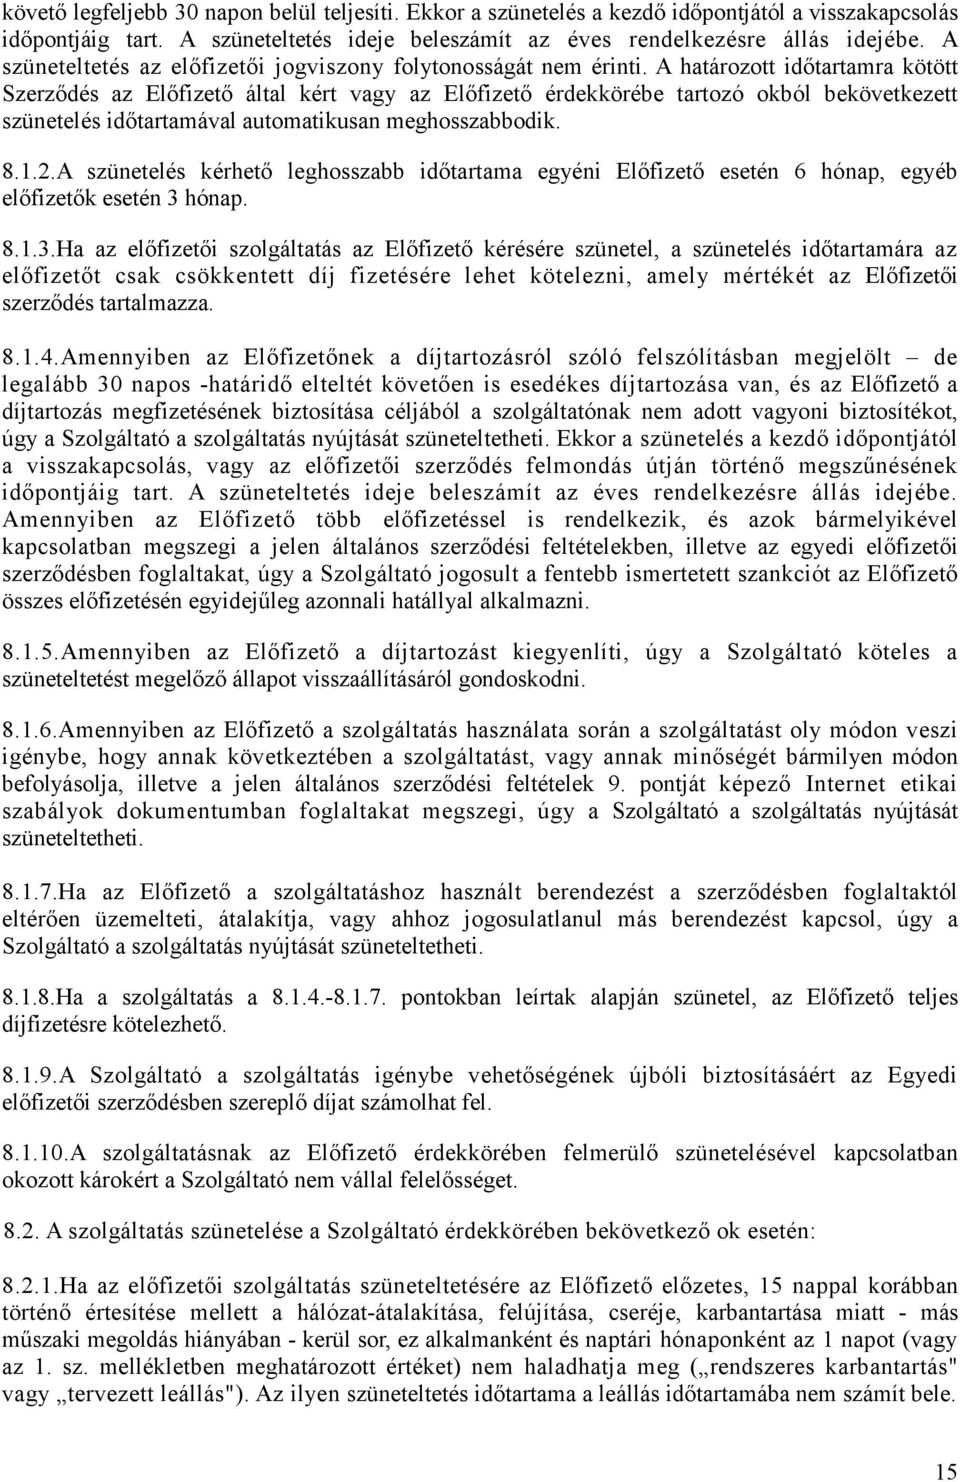 A határozott idıtartamra kötött Szerzıdés az Elıfizetı által kért vagy az Elıfizetı érdekkörébe tartozó okból bekövetkezett szünetelés idıtartamával automatikusan meghosszabbodik. 8.1.2.